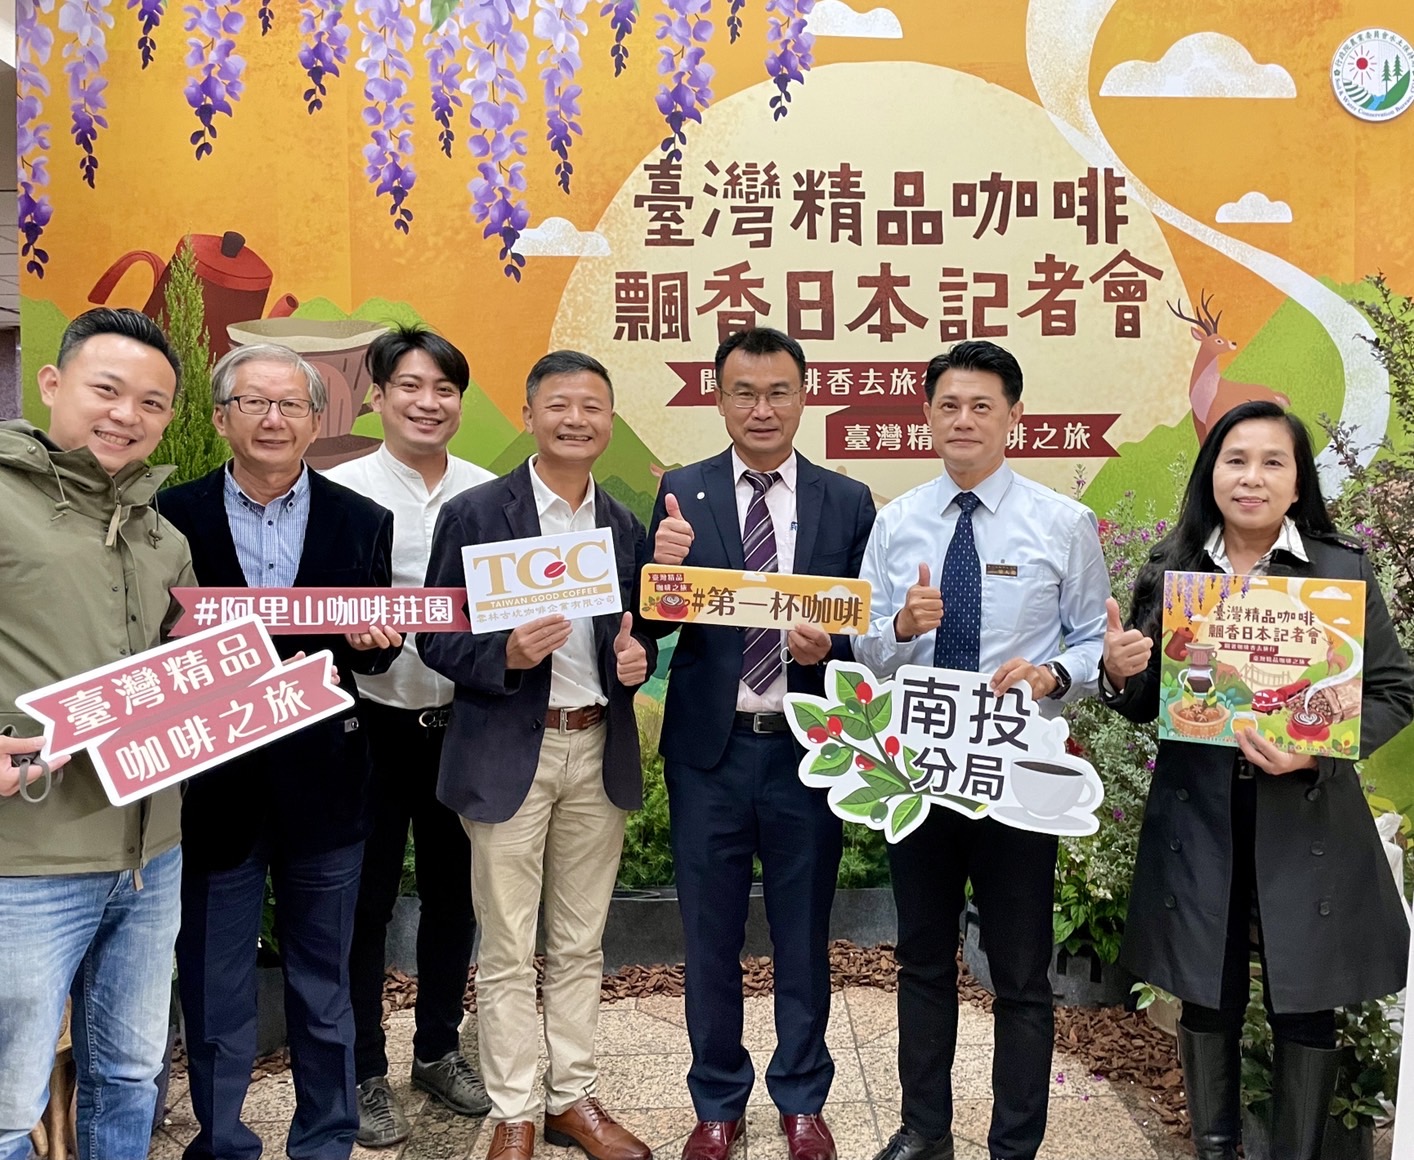 Phim ngắn đã thành công đưa cà phê hạt của 13 nhà kinh doanh Đài Loan bày bán tại 40 quán cà phê trên khắp Nhật Bản, bao gồm Tokyo, Hokkaido, Kinki, Okinawa, Kanto và Shikoku. (Nguồn ảnh: Cục Bảo tồn Nước và Đất của Ủy ban Nông nghiệp – Viện Hành chính)